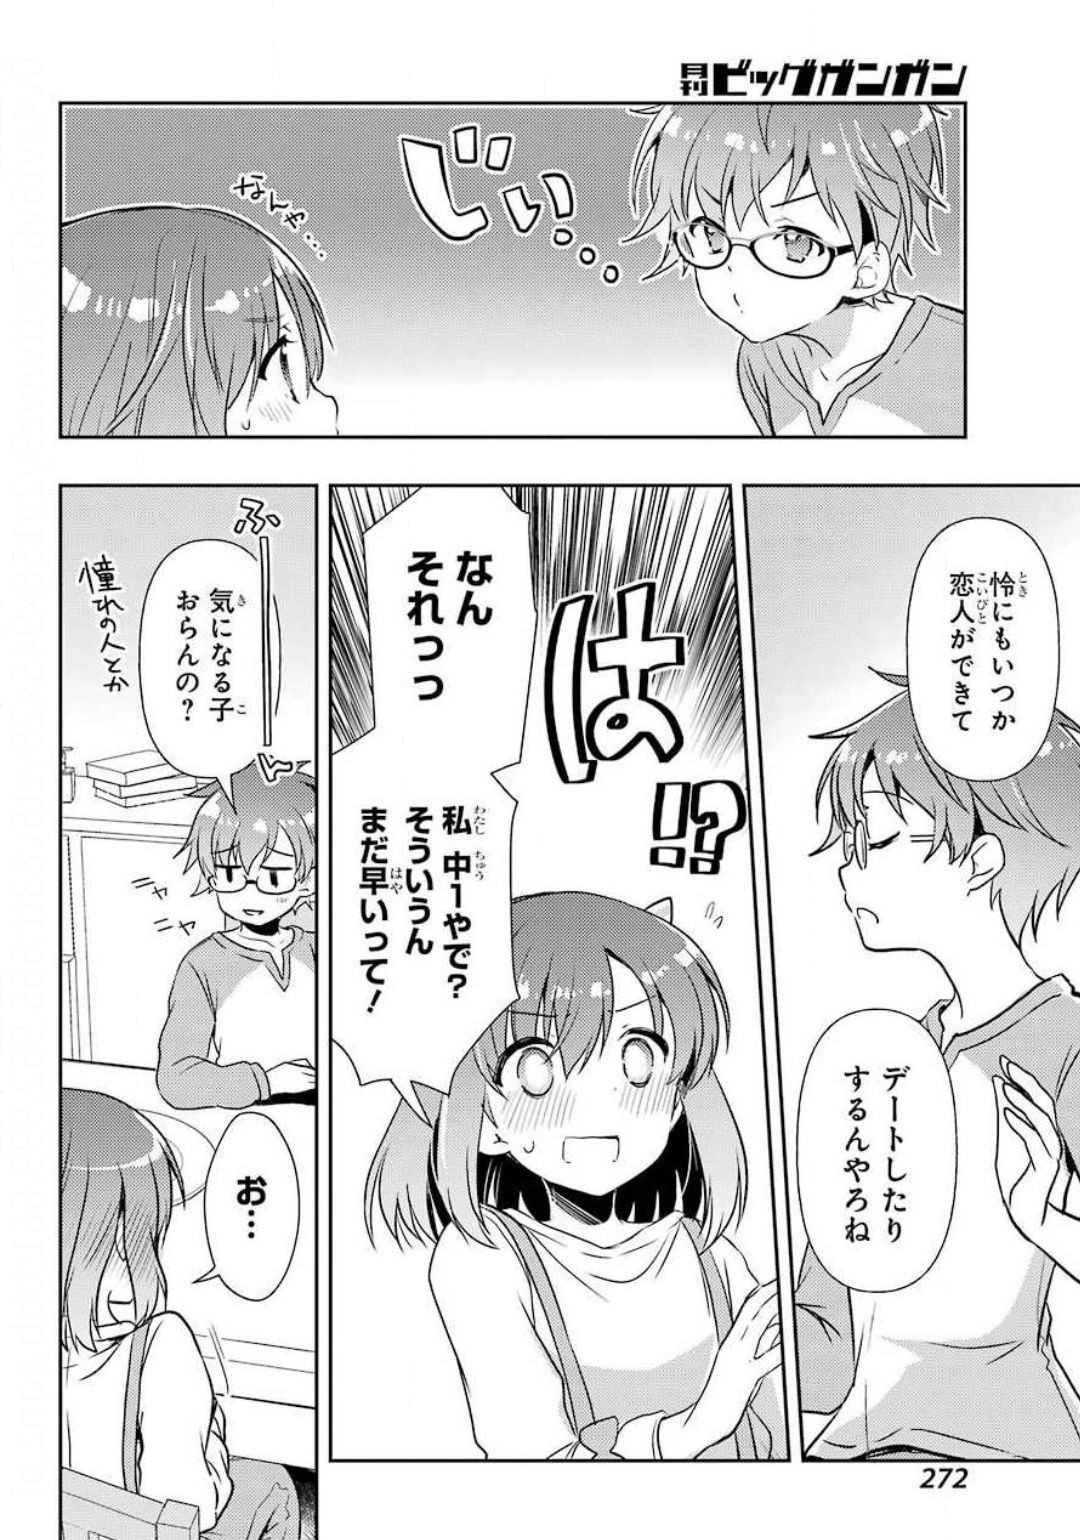 Toki Kobayashi Ritz Chapter 045 Page 18 Raw Sen Manga